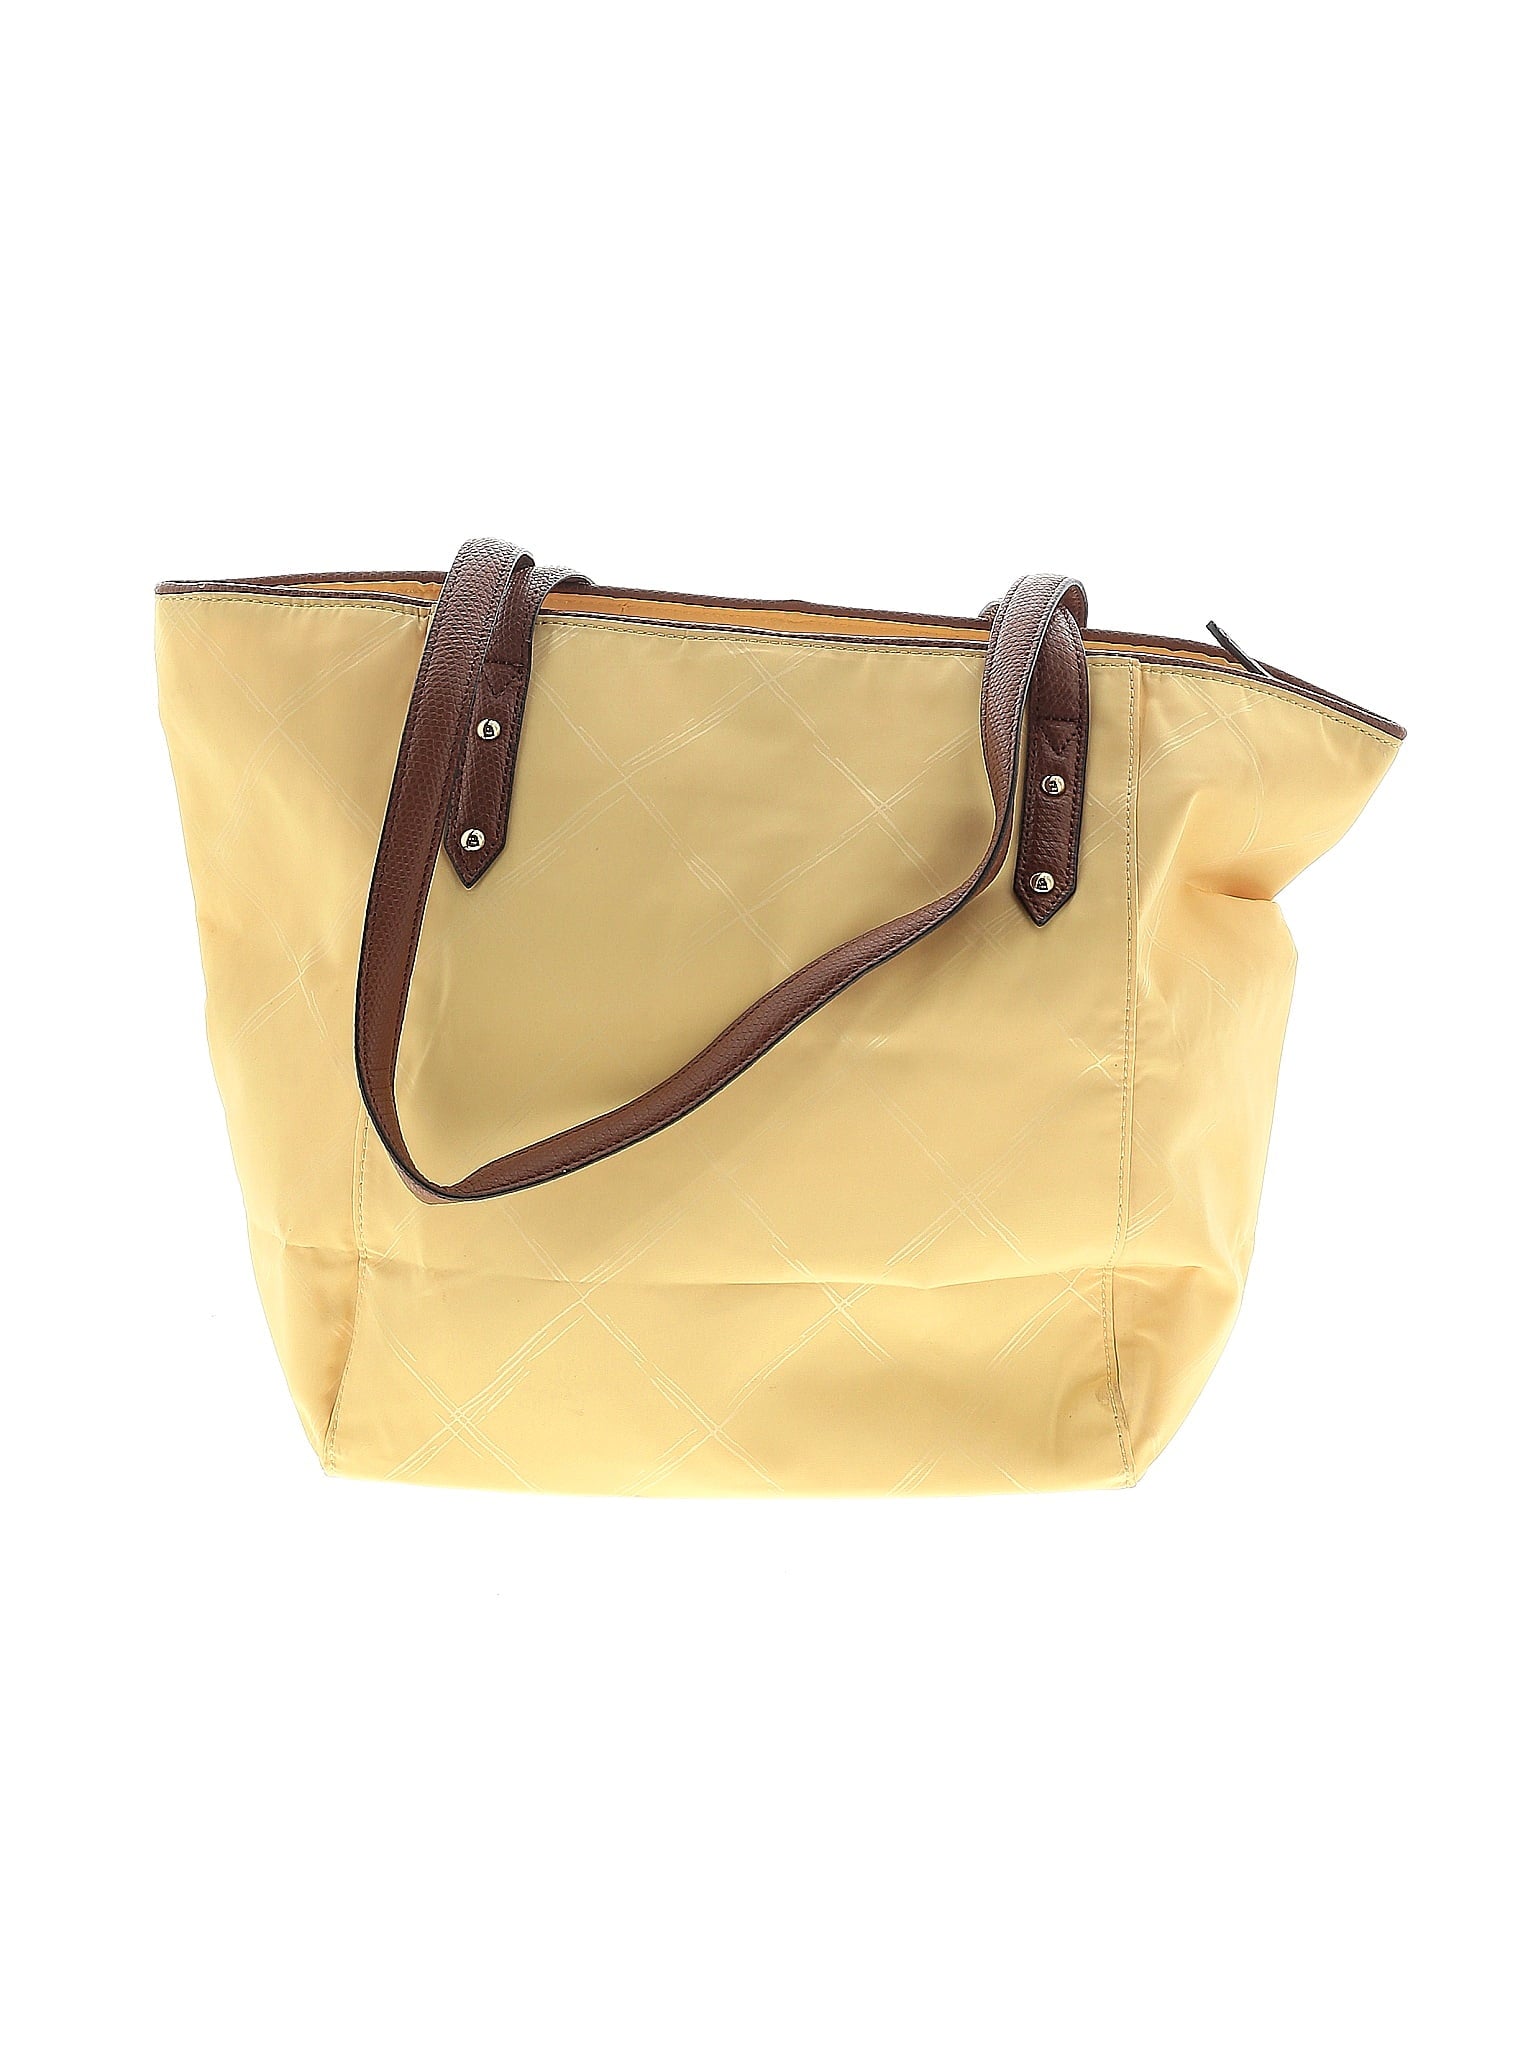 Shoulder Bag size - One Size